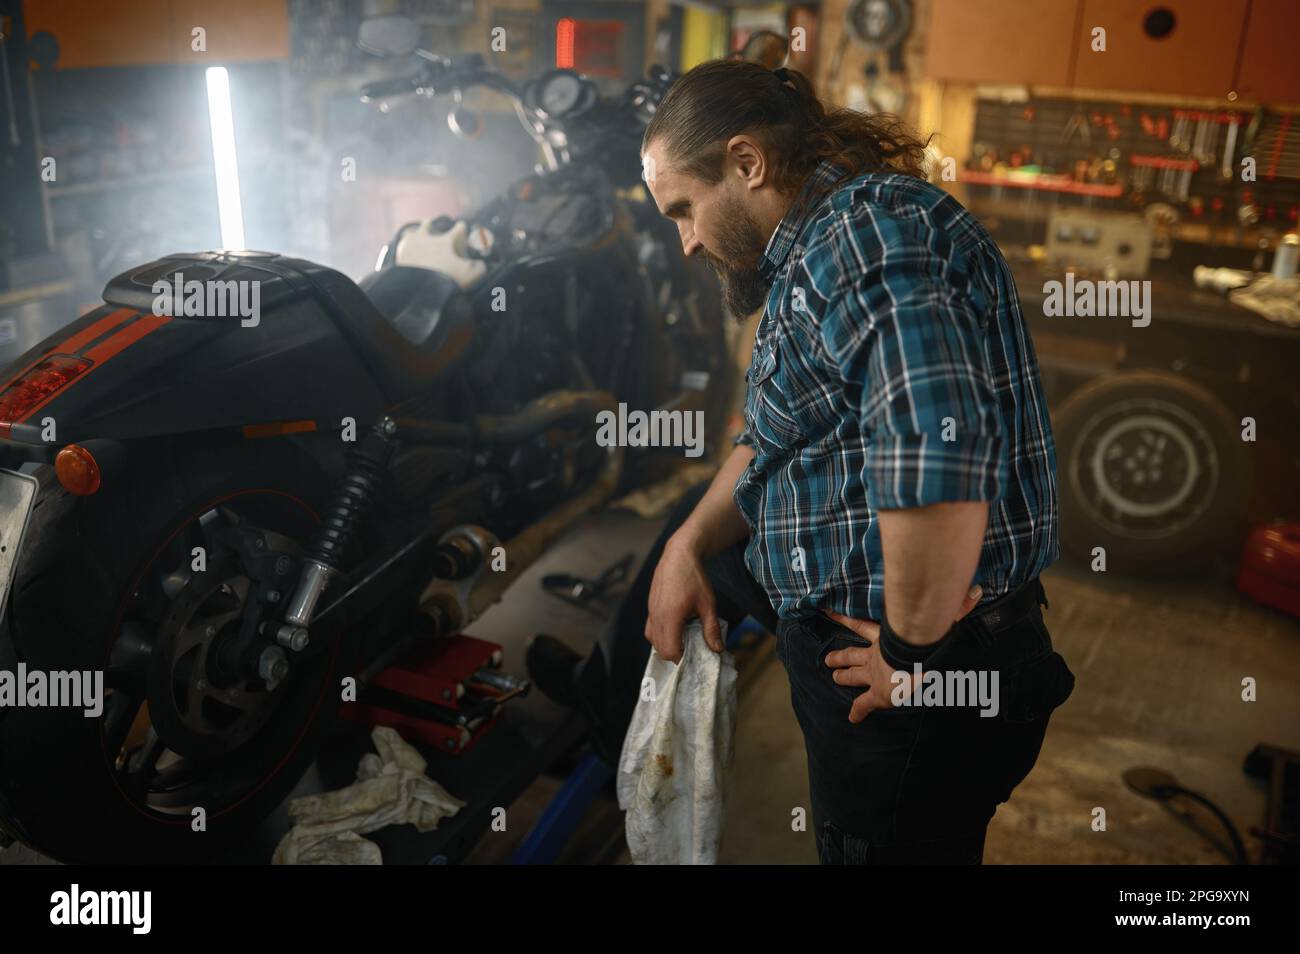 Ciclista brutal que se limpia las manos mientras repara el motor de la motocicleta Foto de stock